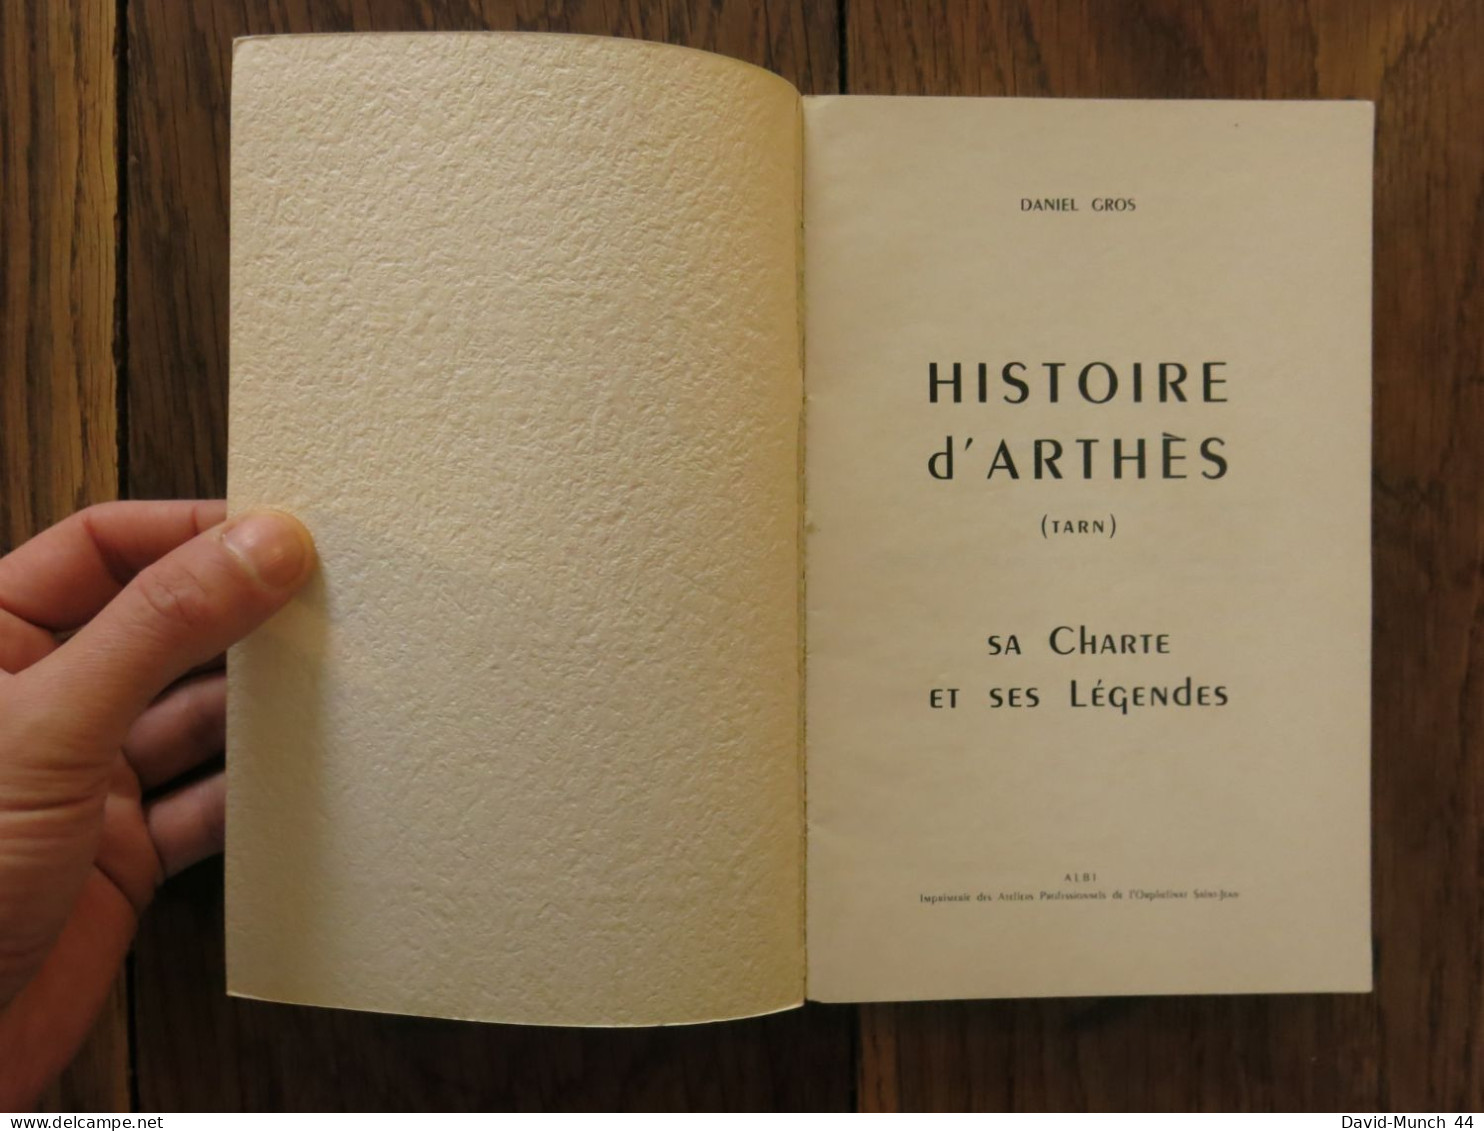 Histoire D'Arthès (Tarn), Sa Charte Et Ses Légendes De Daniel Gros. 1966 - Midi-Pyrénées